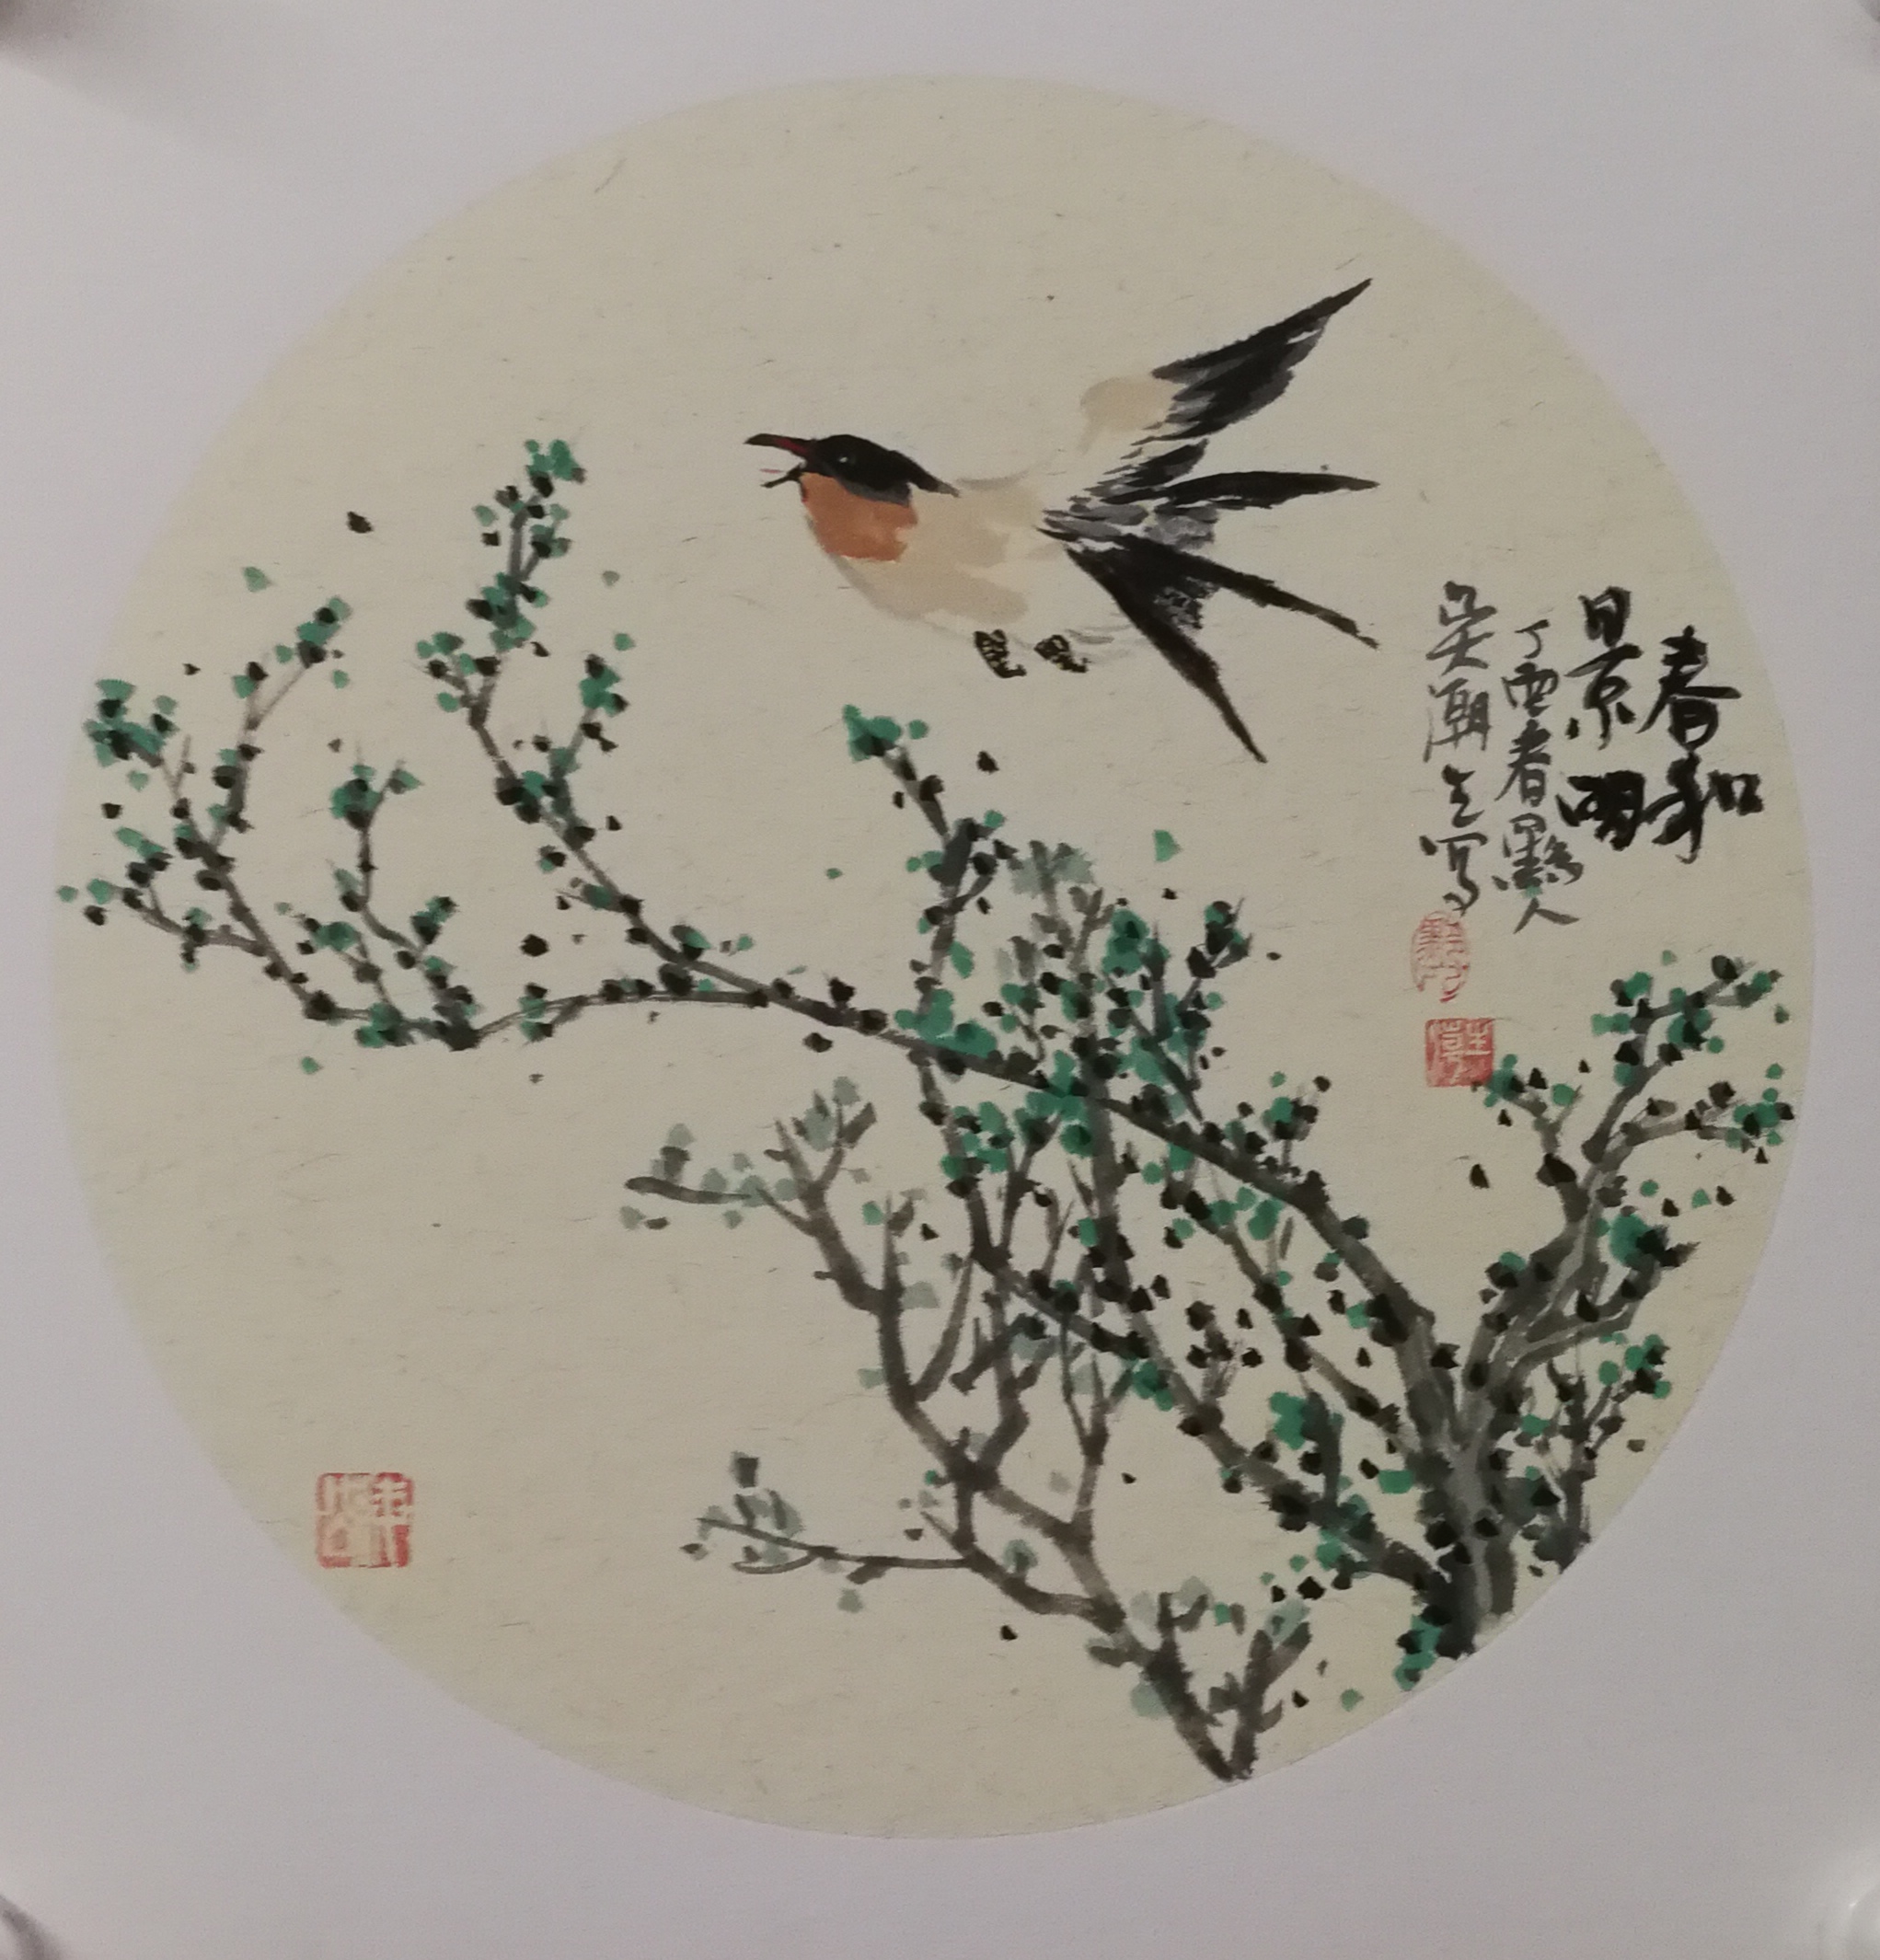 吴潮生写意花鸟画作《春和景丽》